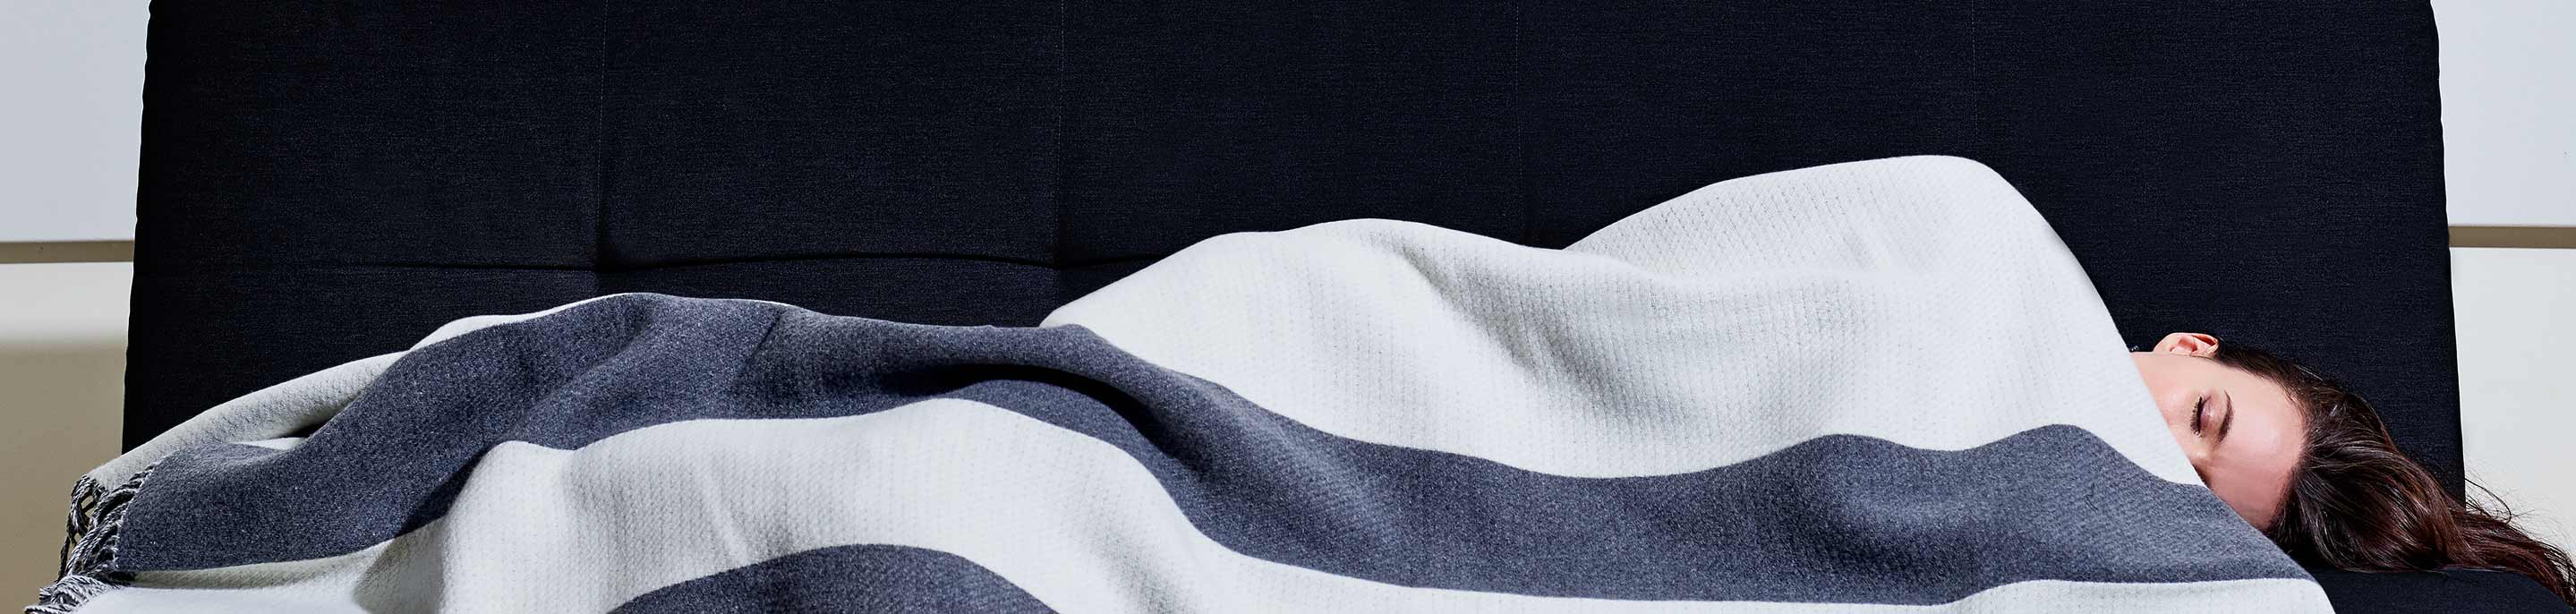 Nordic Chessboard Grid Thick Blanket Office Nap Blanket Light Luxury Half  Velvet Blanket Bed Blankets From Sukatiger, $19.3